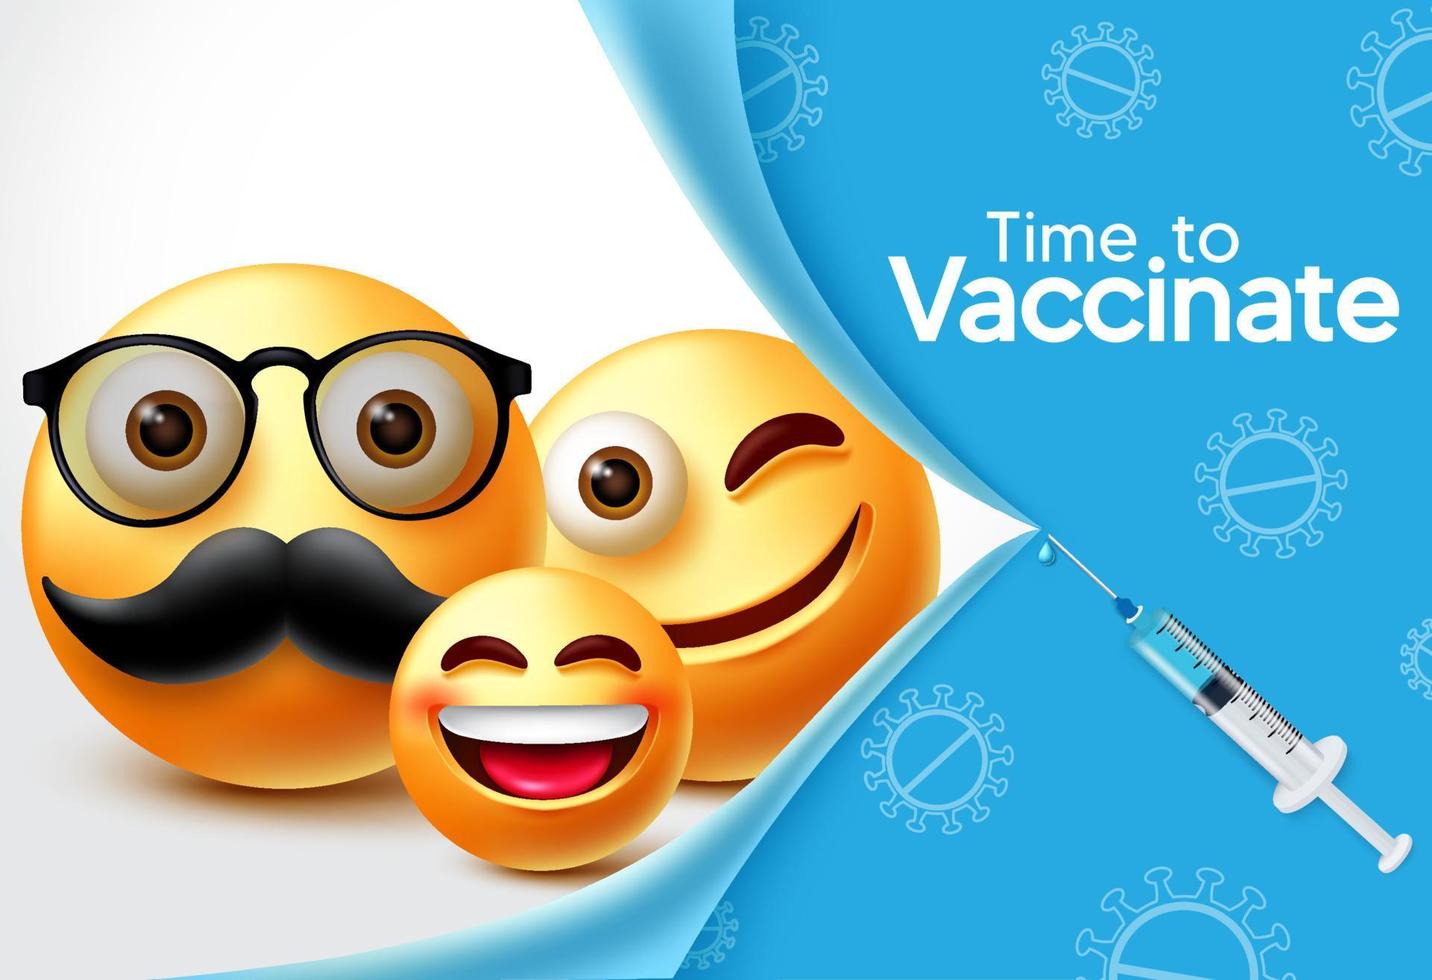 projeto da bandeira do vetor de vacina de personagens emoji. hora de vacinar o texto com o personagem emojis 3d da família e o elemento da seringa para o projeto de vacinação e prevenção covid-19. ilustração vetorial